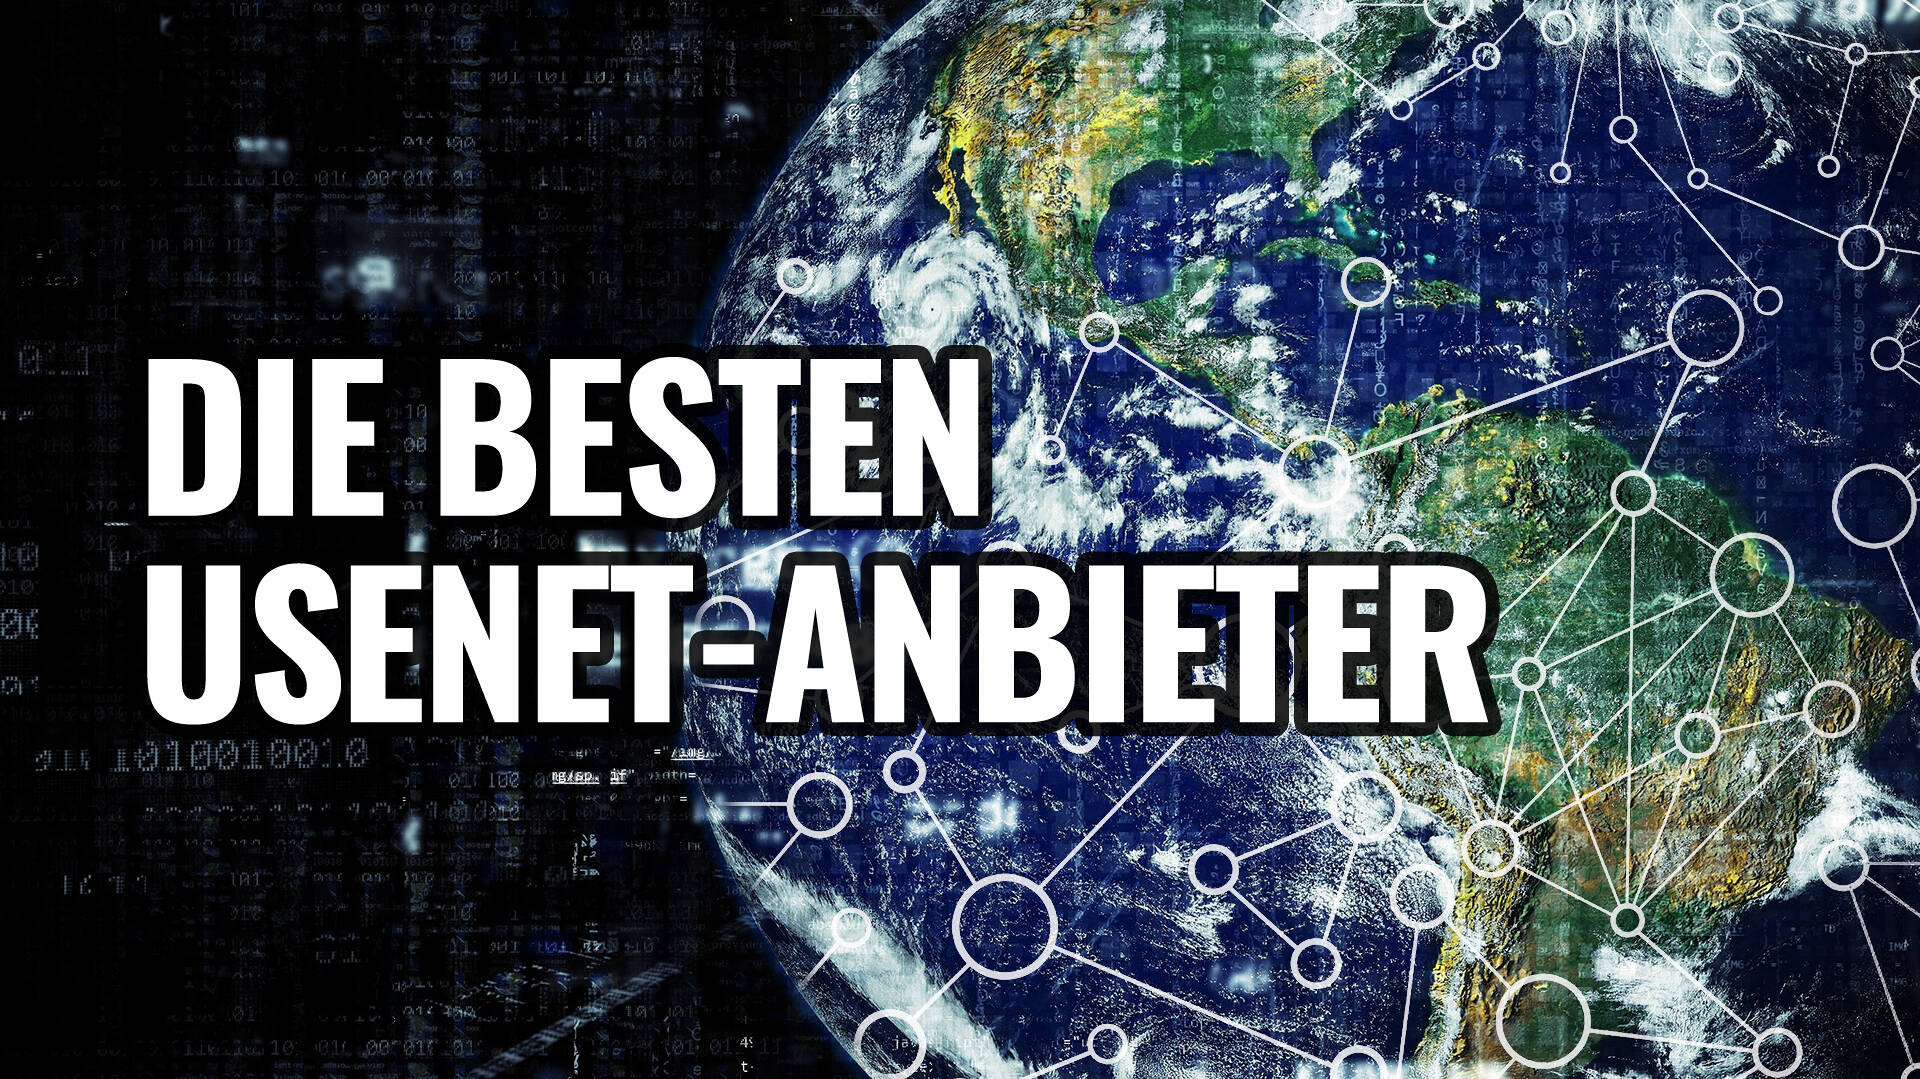 Usenet-Anbieter: So finden Sie den besten Provider